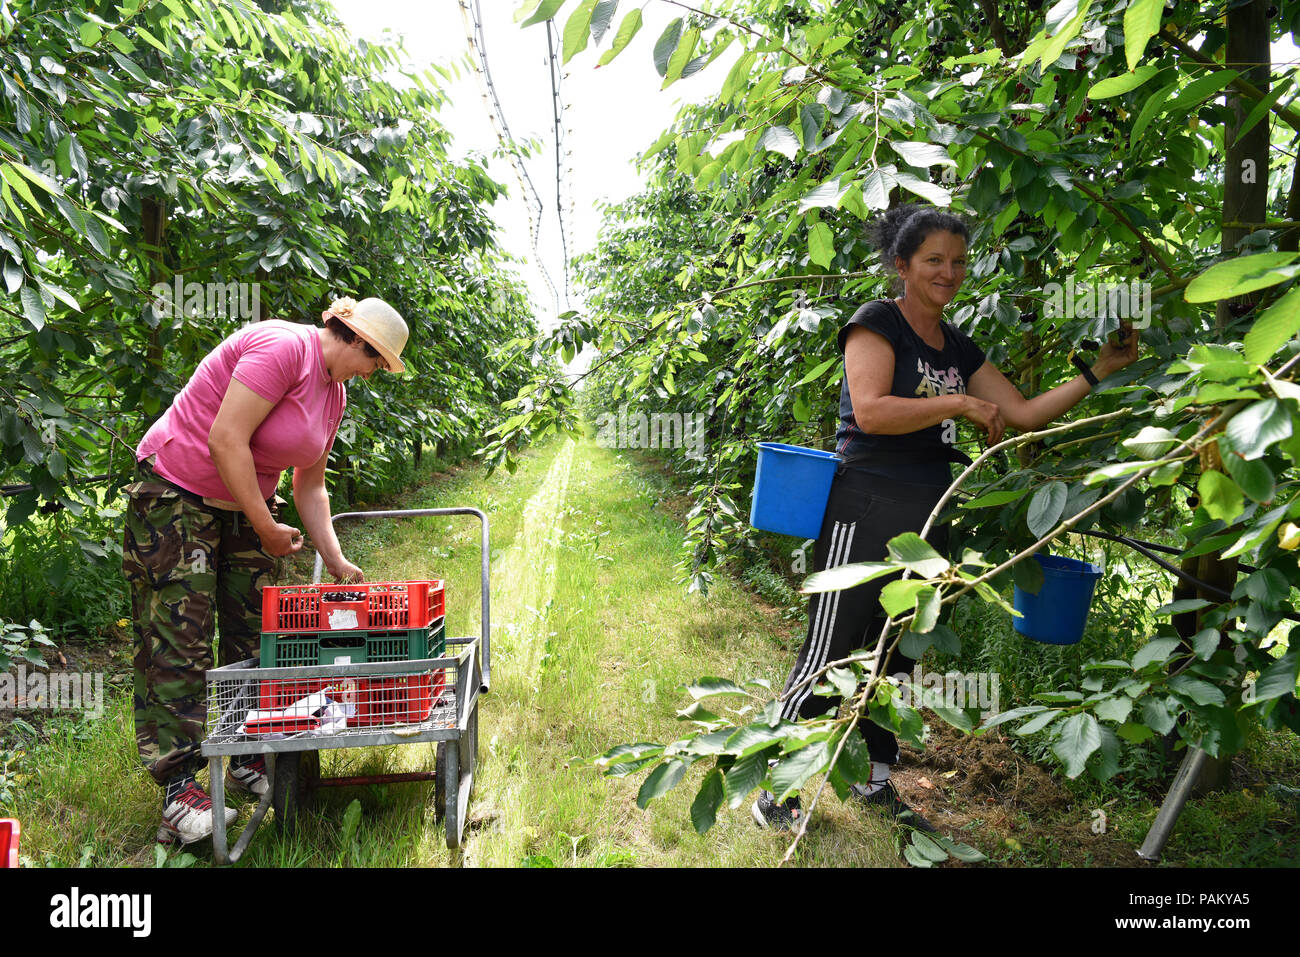 Les travailleurs migrants d'Europe de l'Est, principalement en roumain, en travaillant dans une cerisaie, Blackmoor ferme, Blackmoor, Hampshire, Royaume-Uni. 21 juillet 2018. Banque D'Images